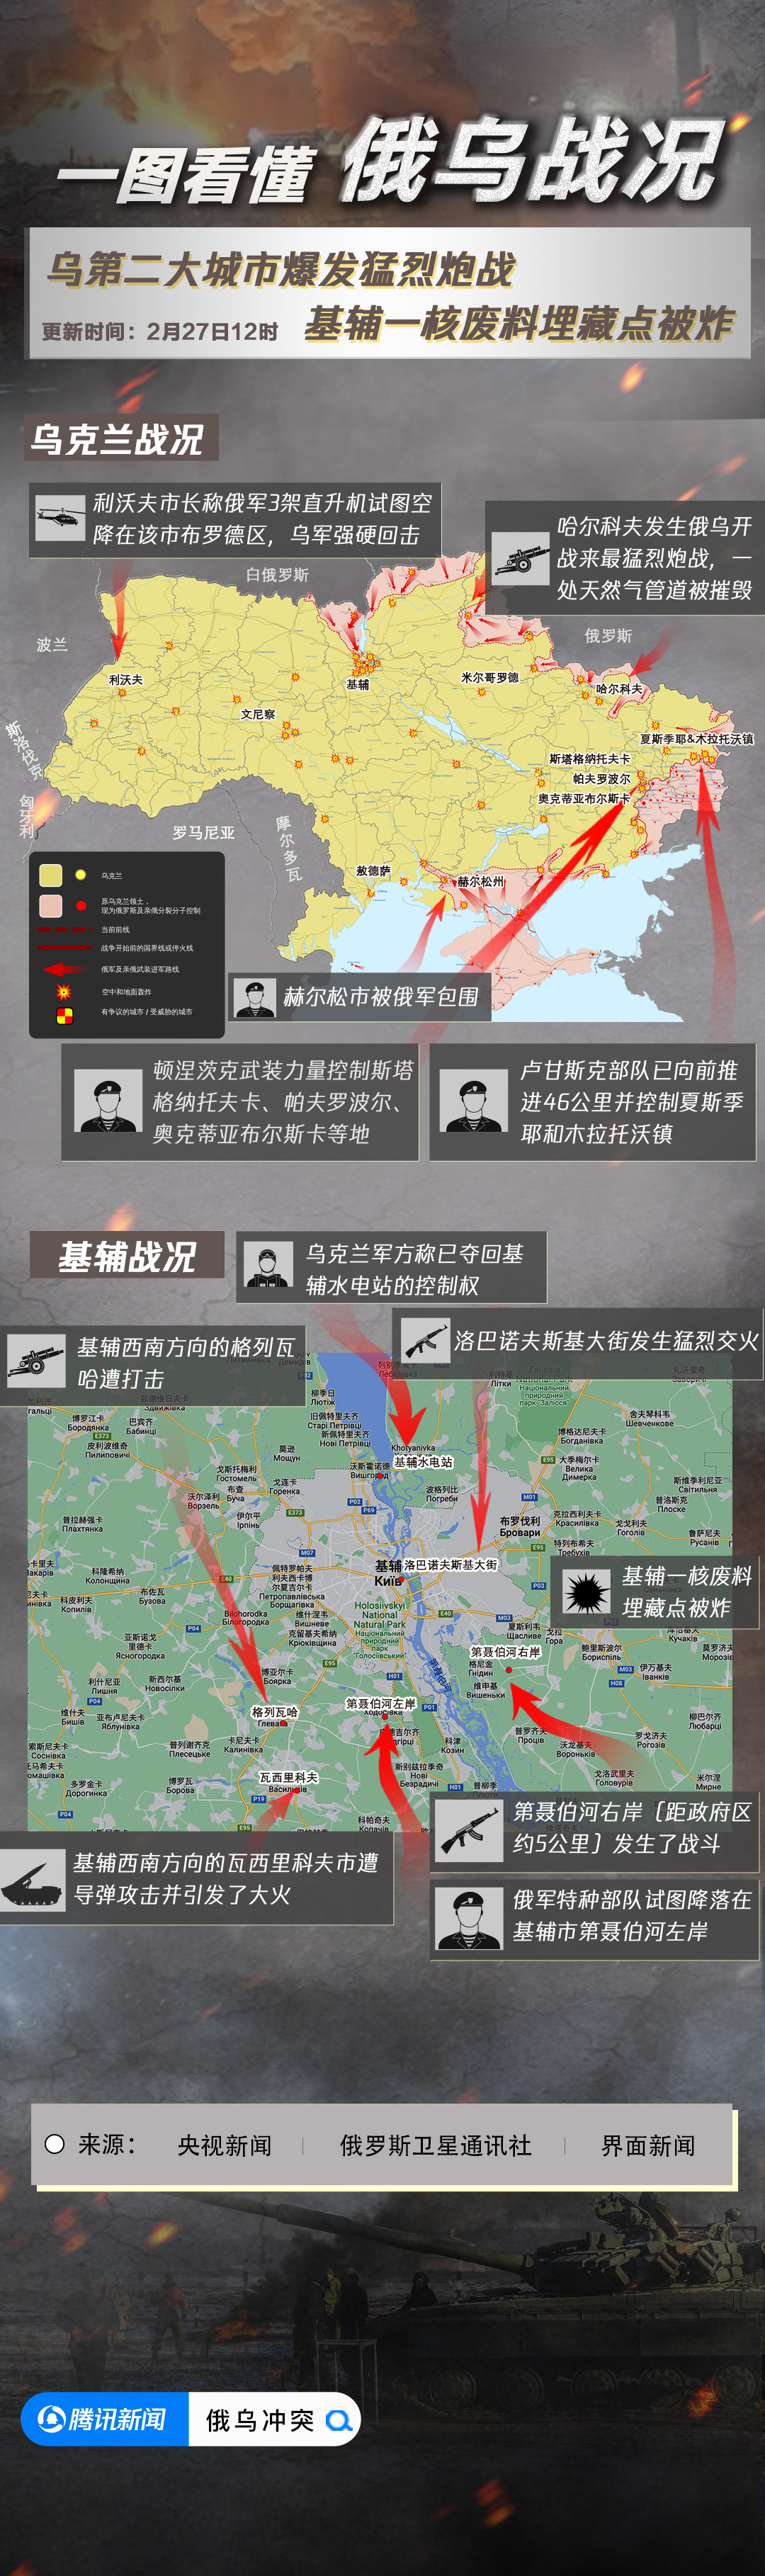 俄乌冲突持续 实拍乌克兰前线军人_凤凰网